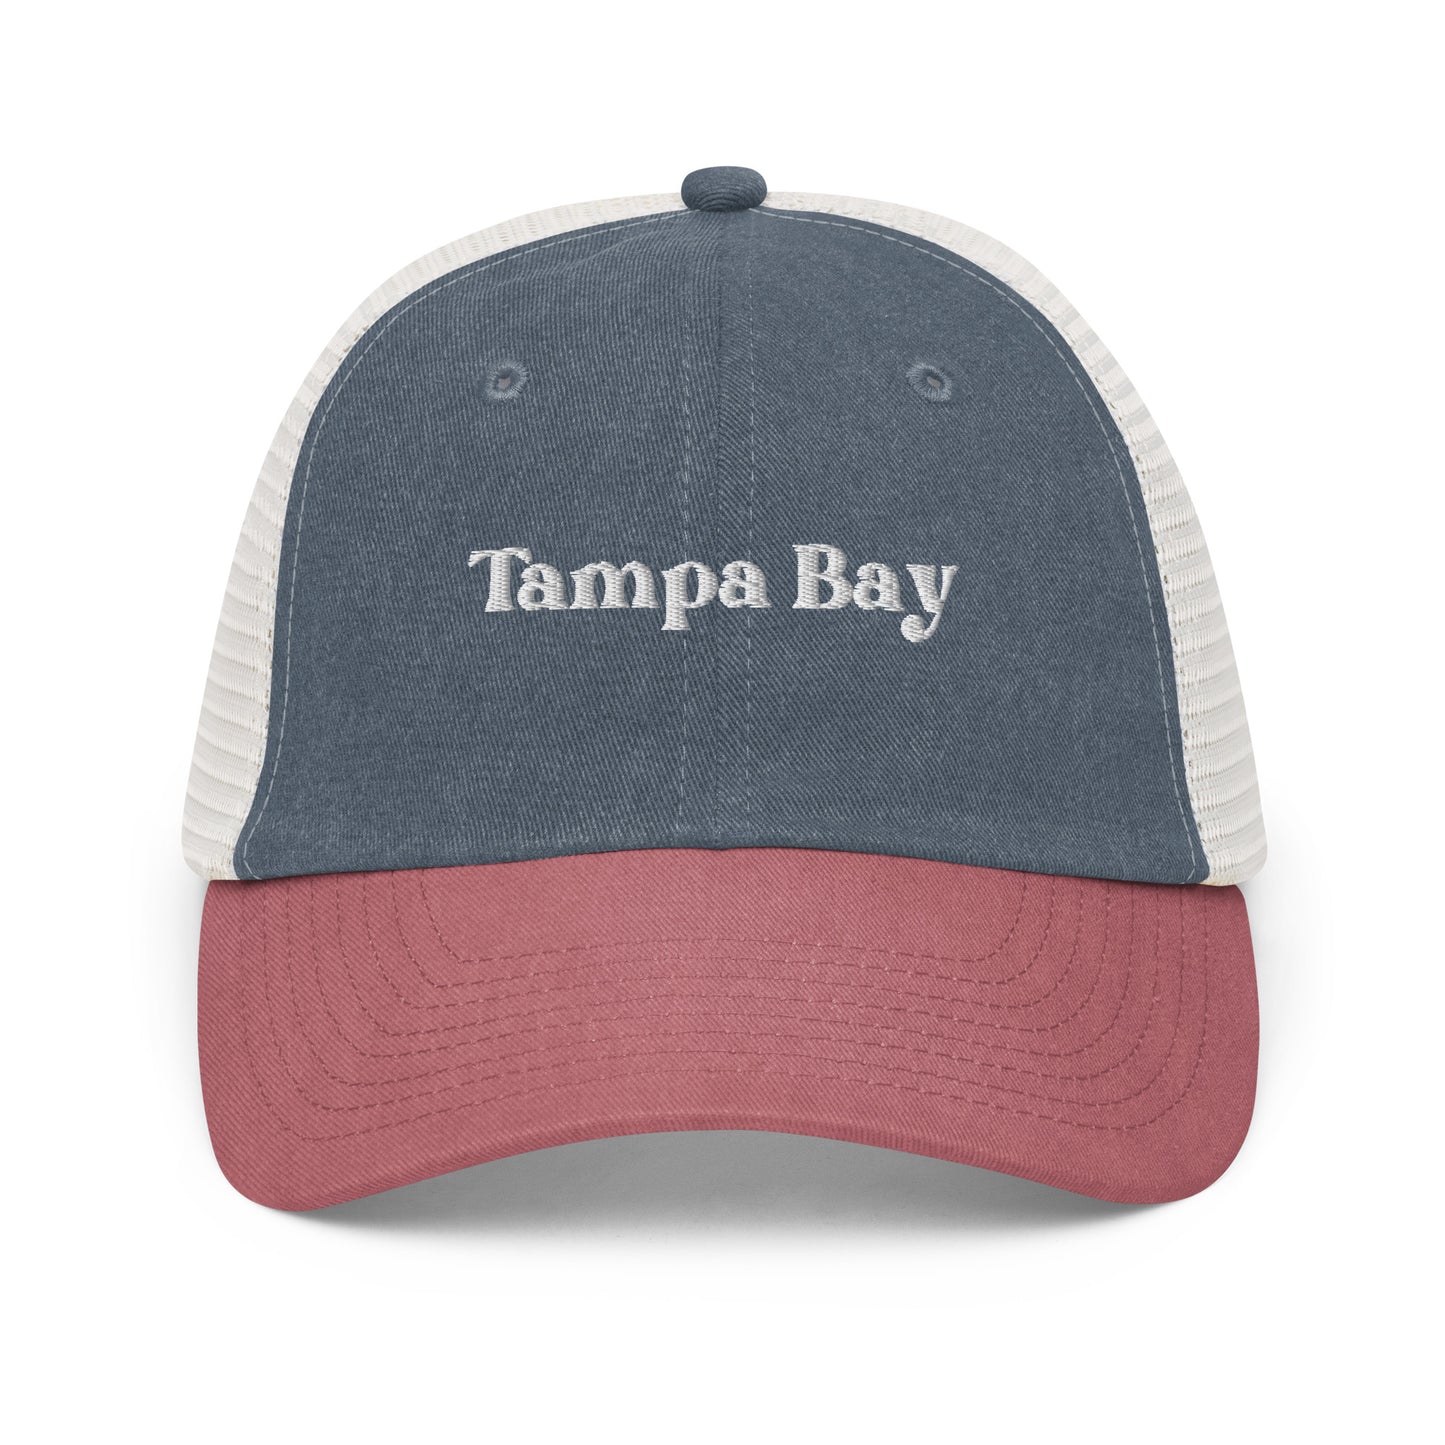 Tampa Bay Mesh Hat